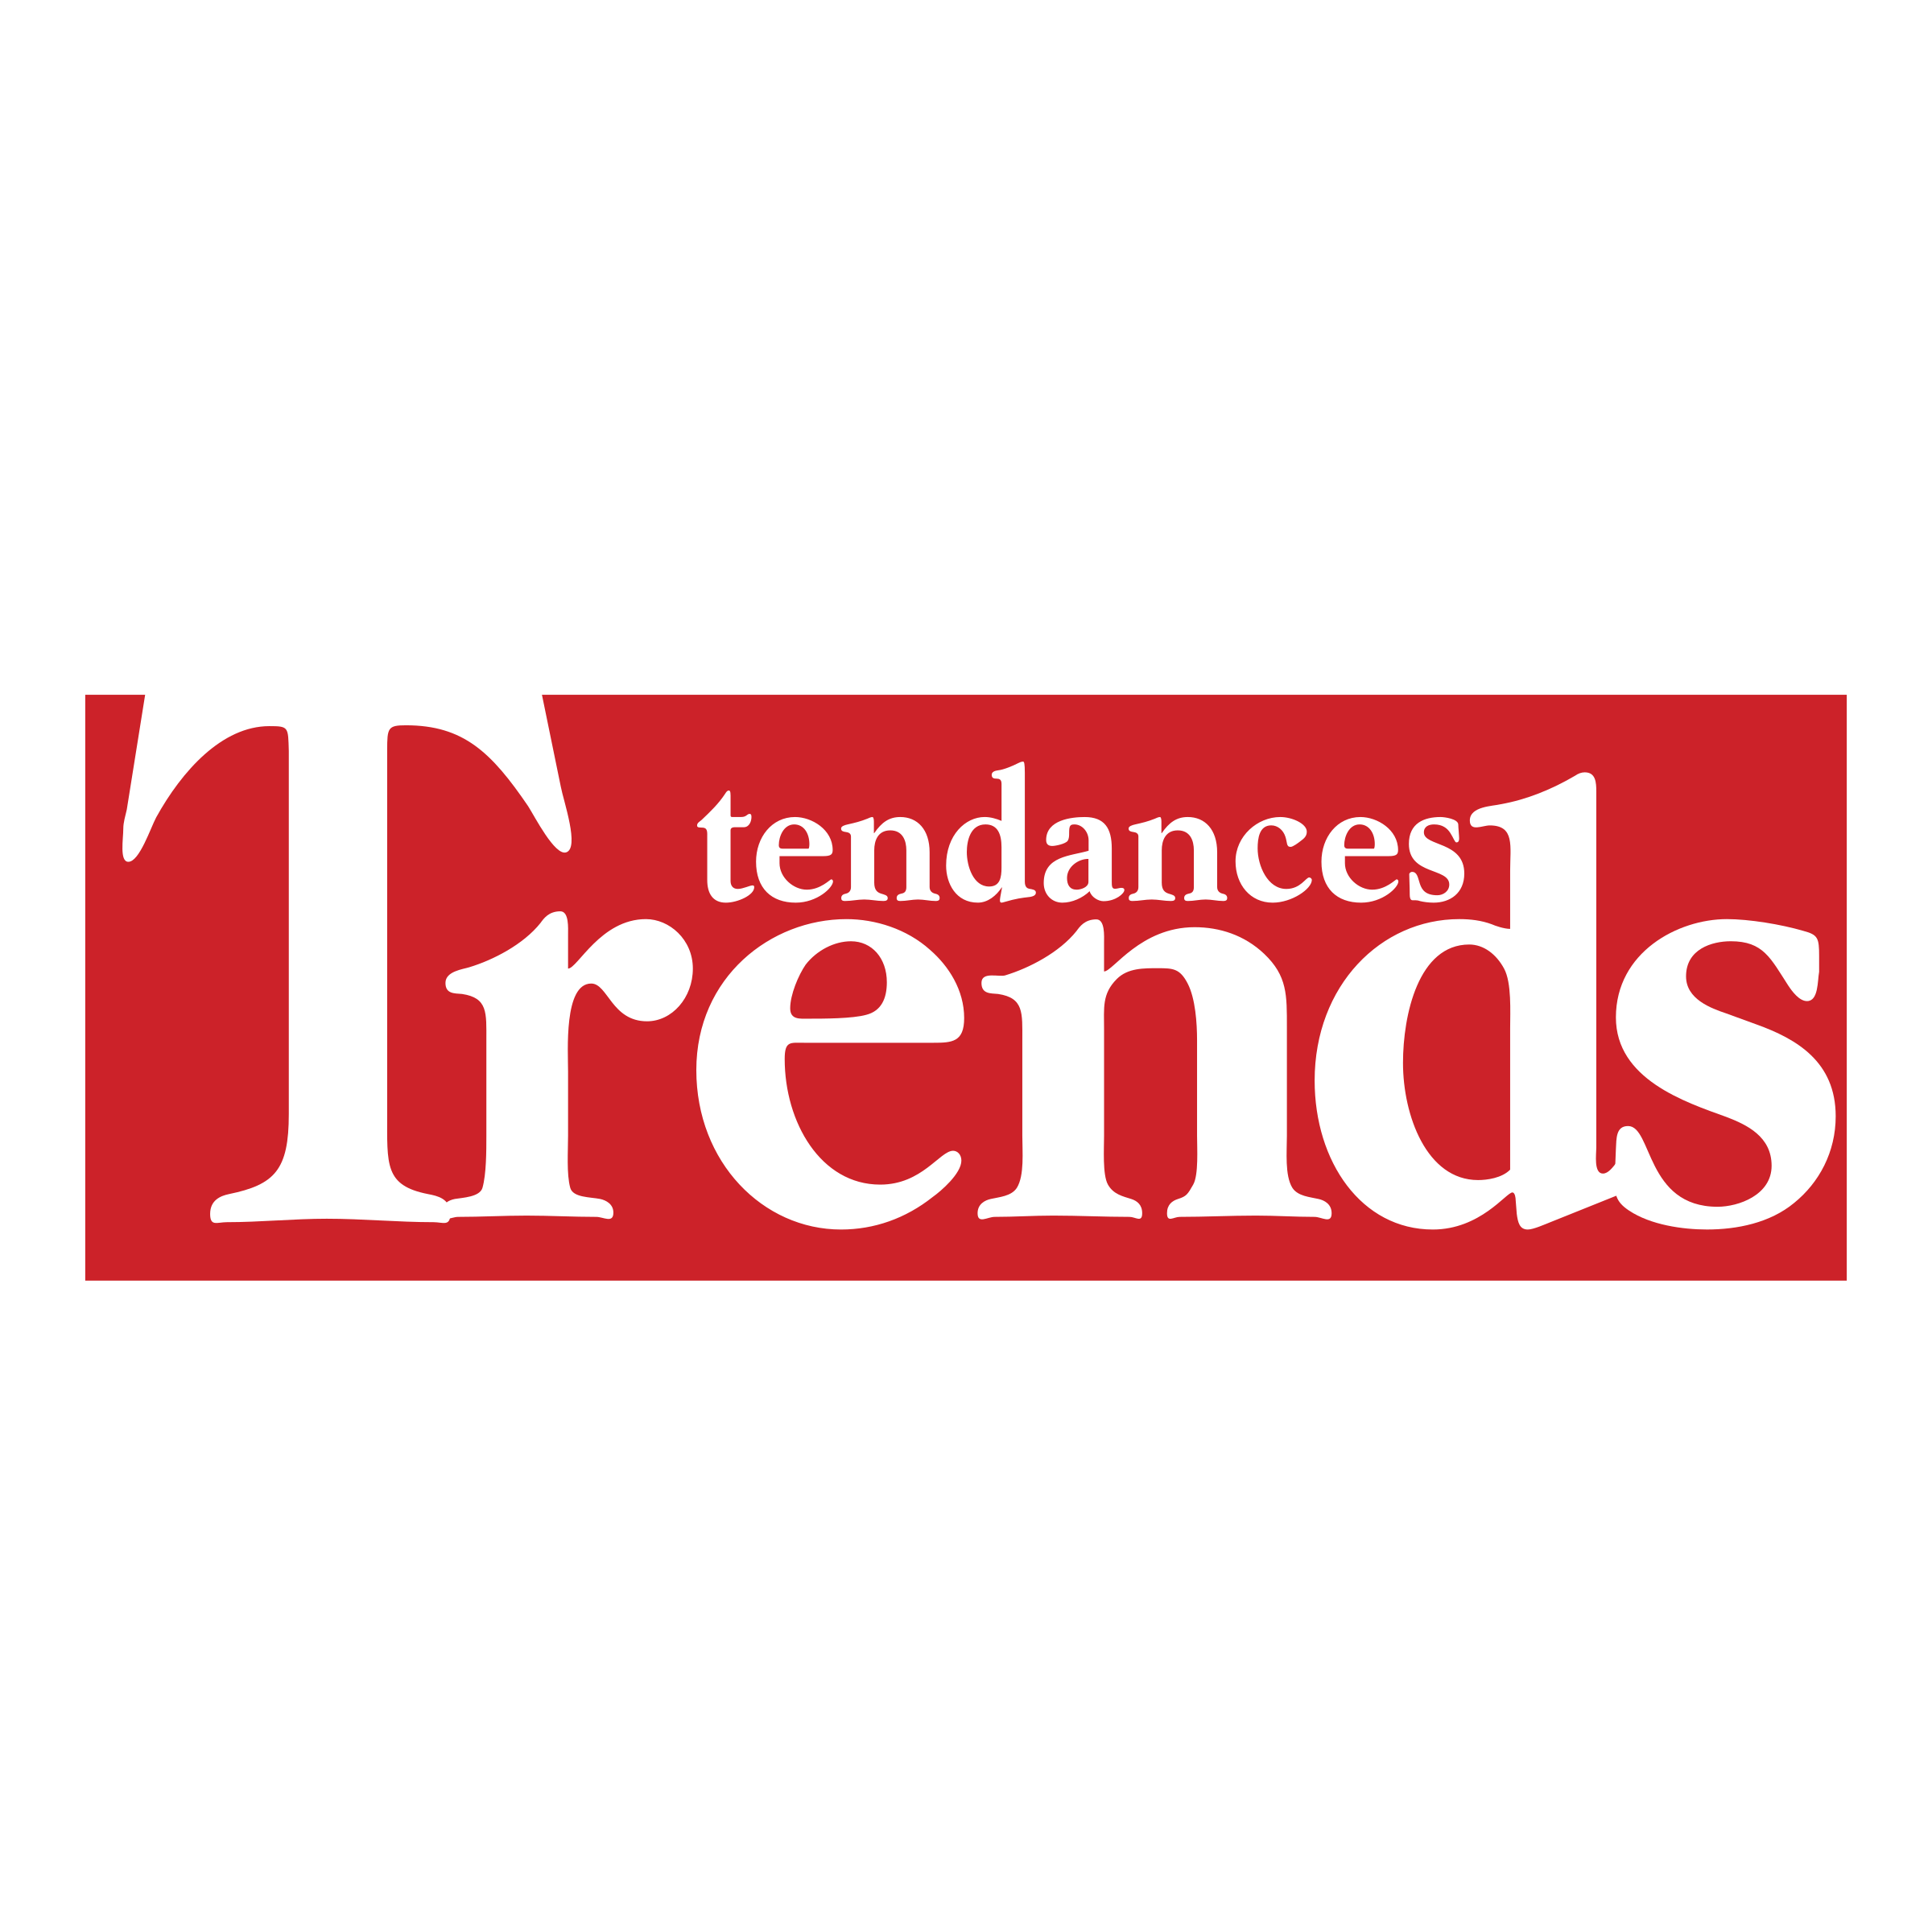 Trends Tendances